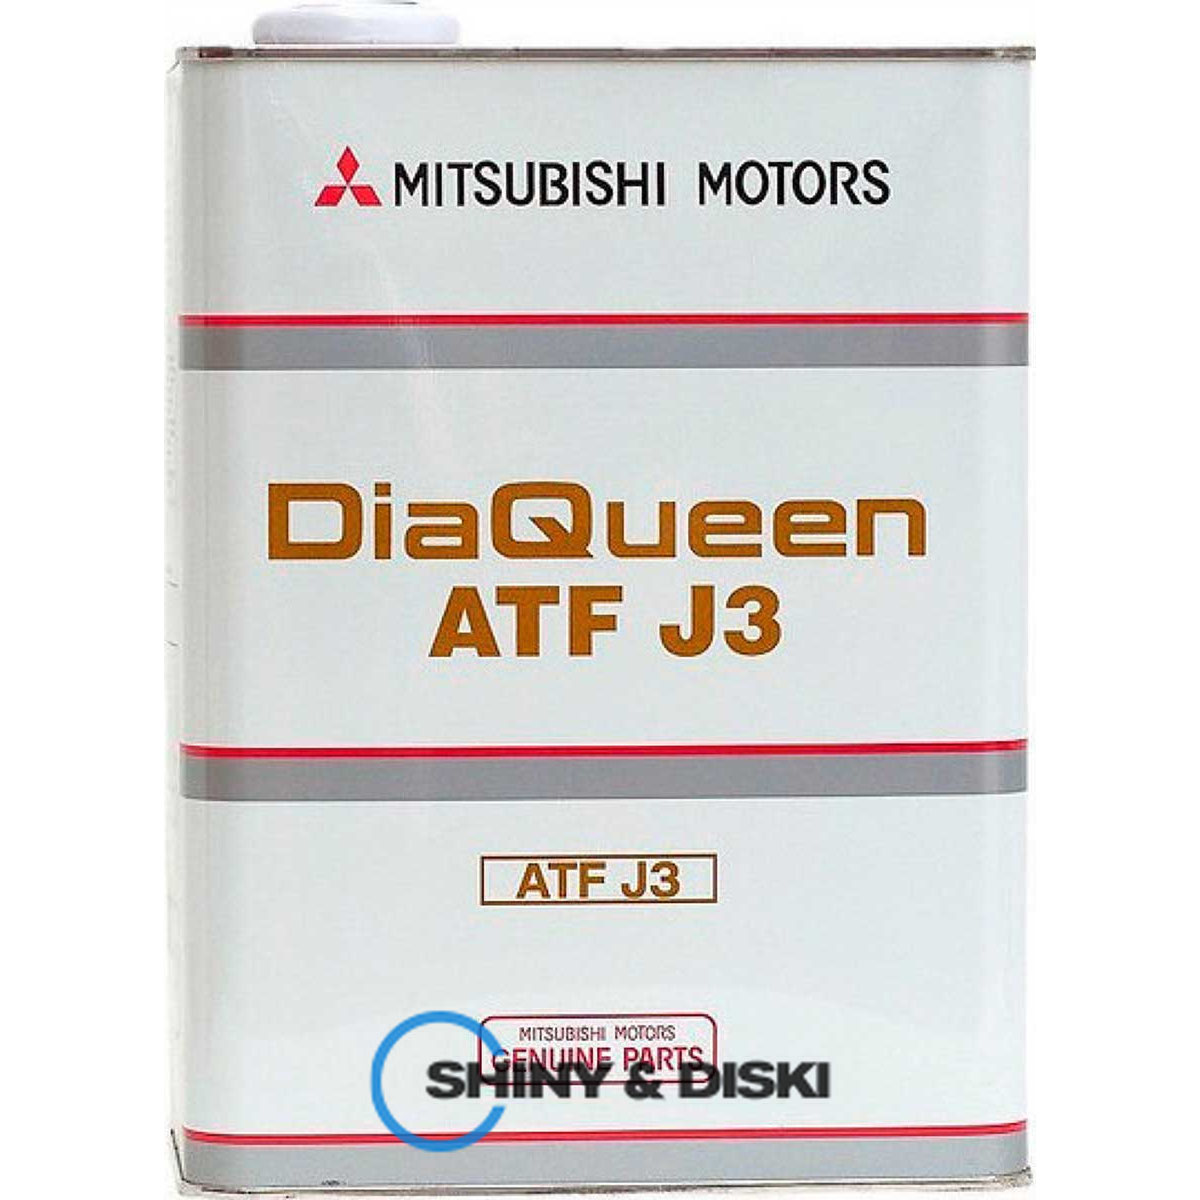 mitsubishi diaqueen atf j3